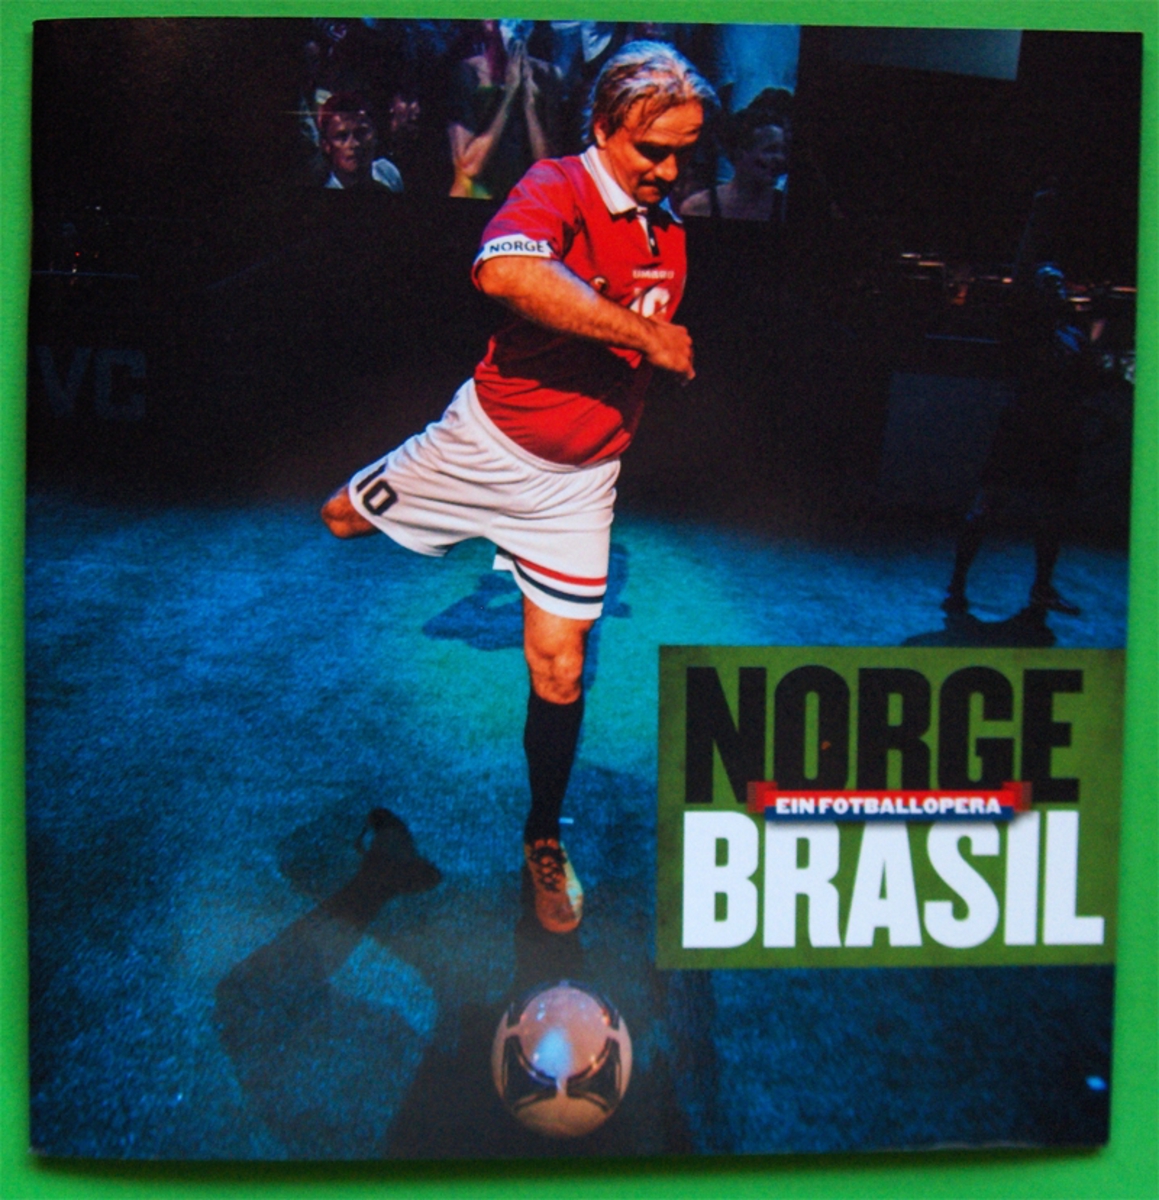 Teaterprogrammet til Are Kalvøs fotballopera "Norge-Brasil" på Det Norske Teatret.